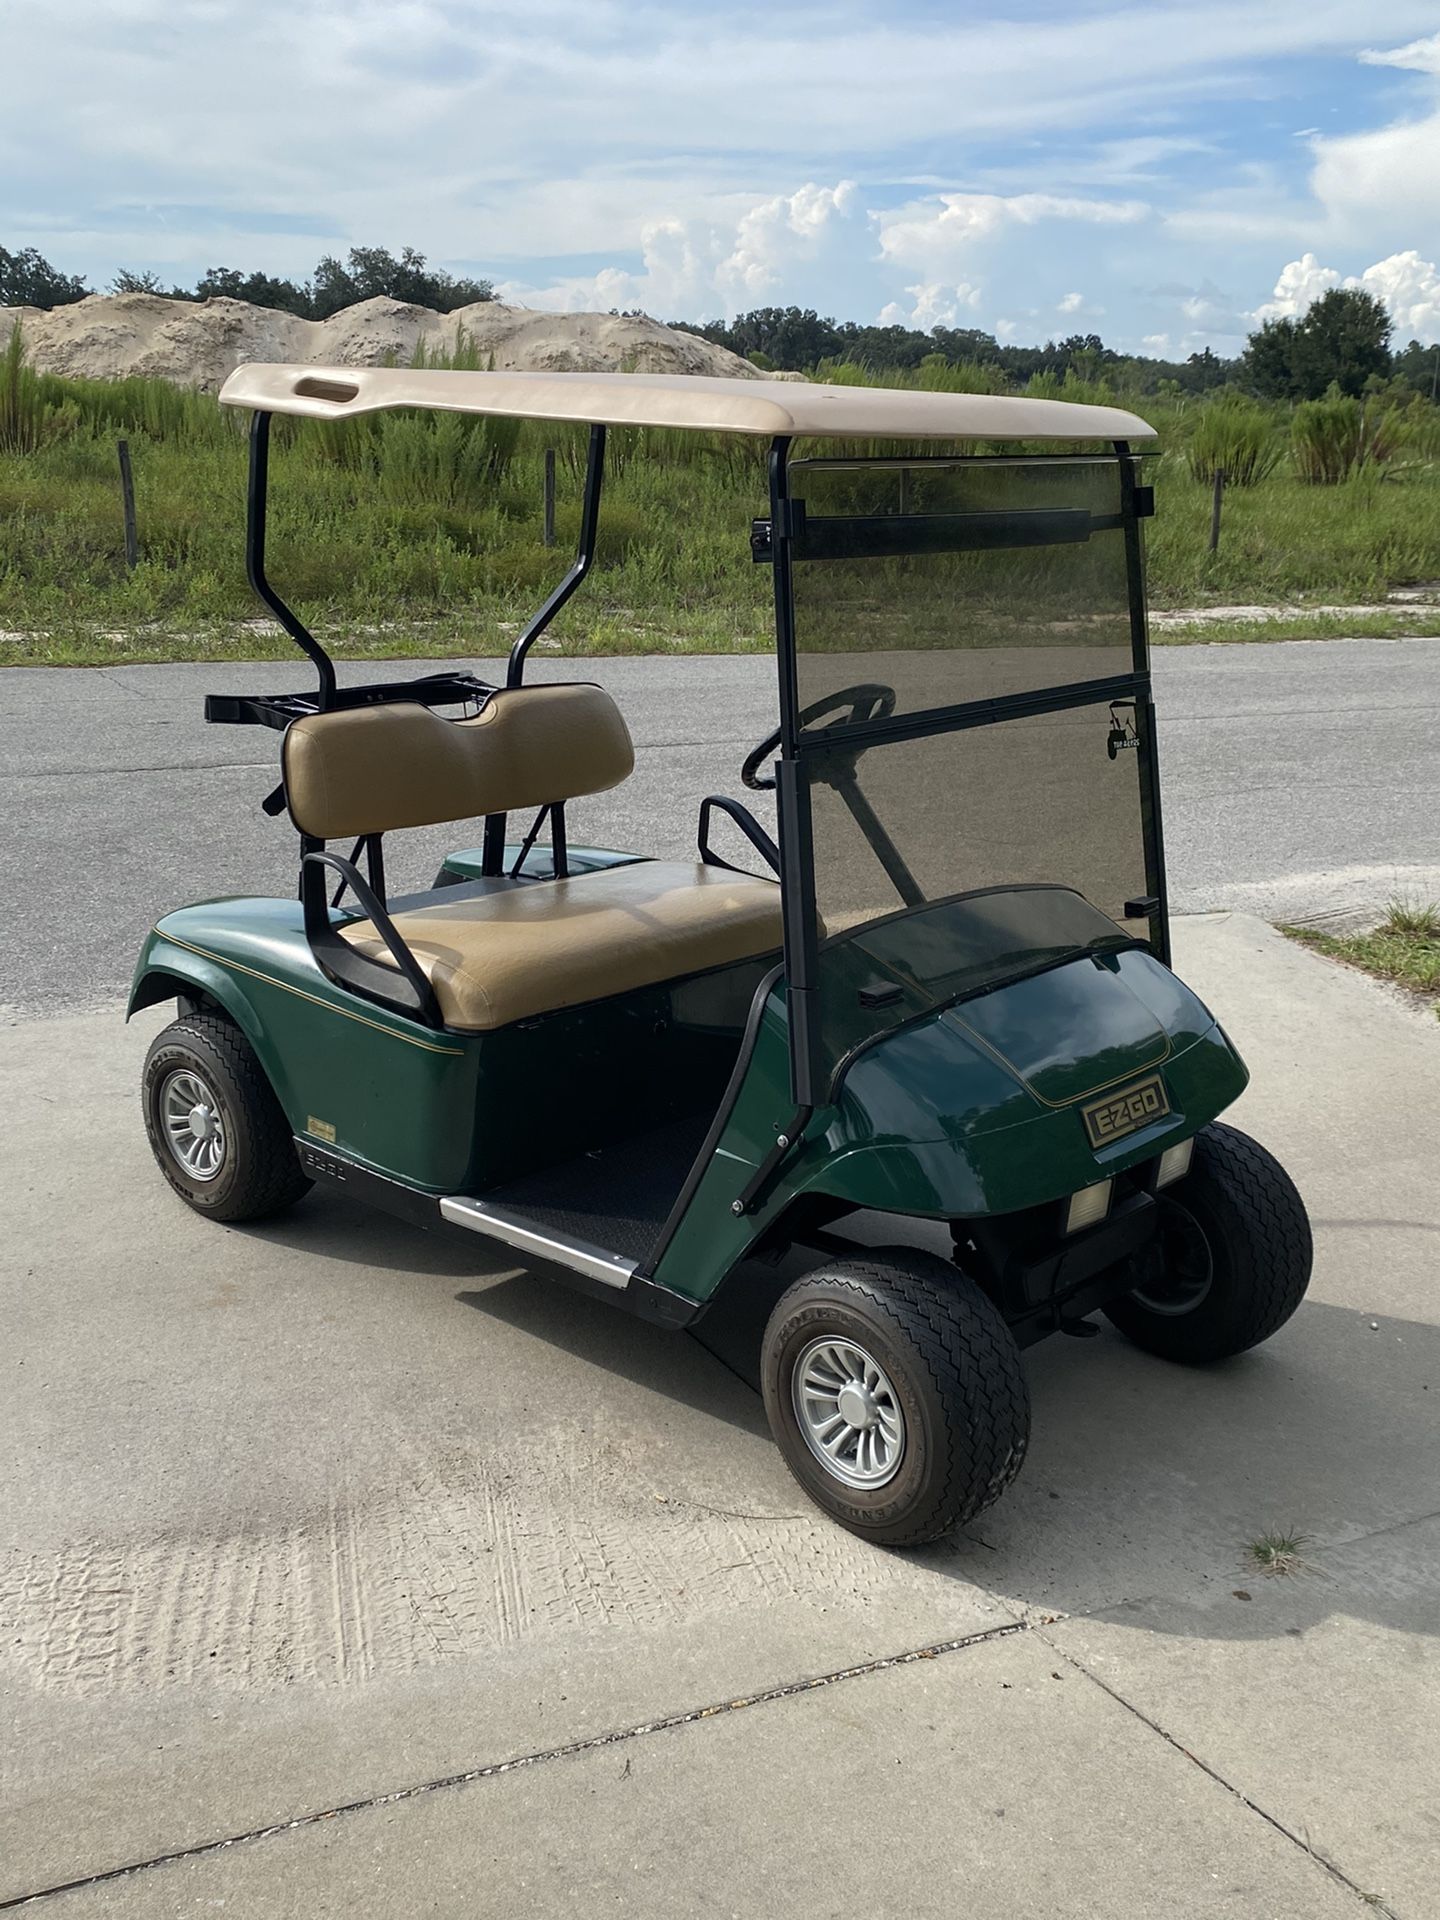 2007 Ez-go golf cart